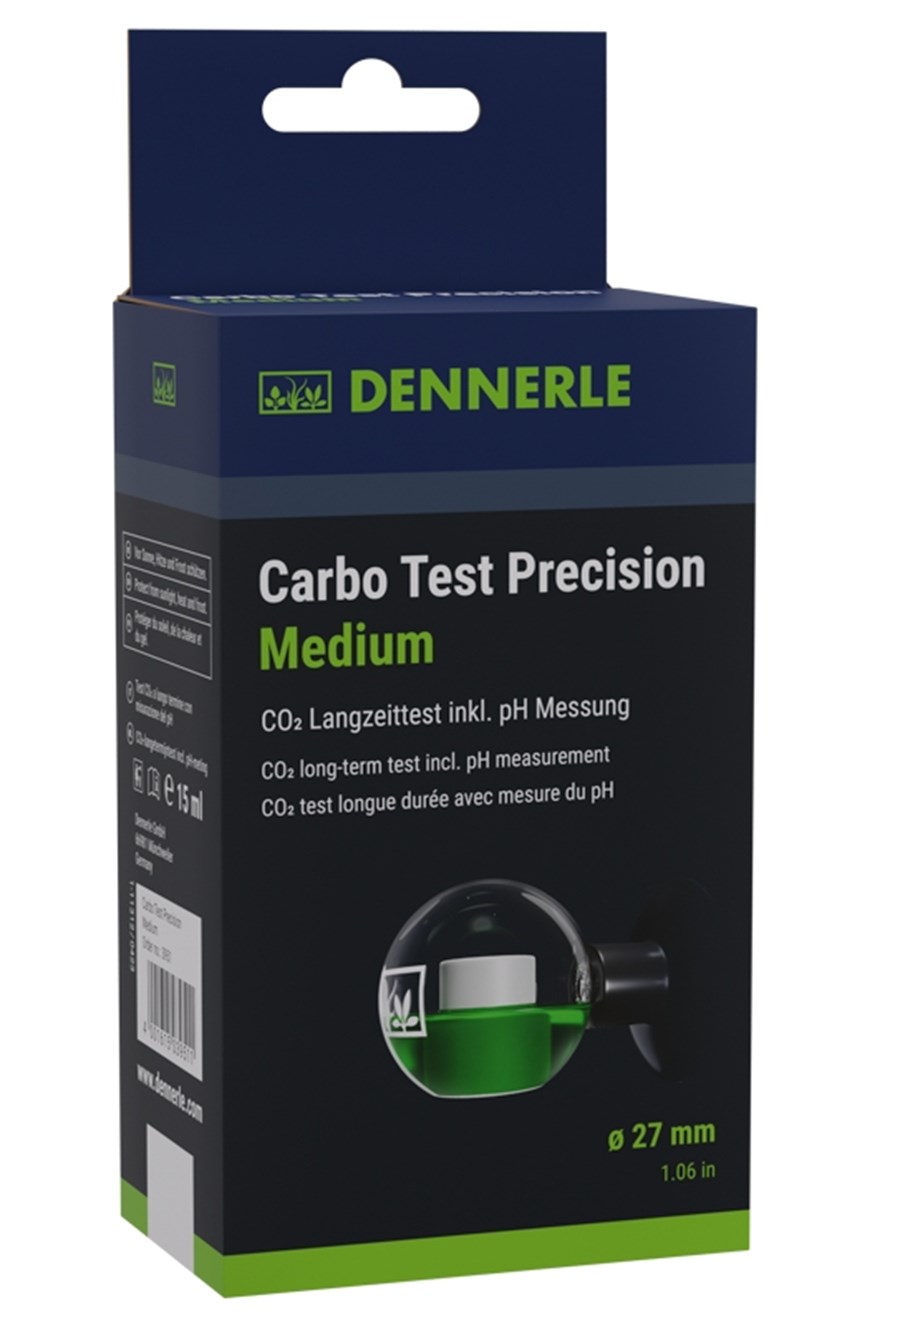 Carbo Test Precision Medium